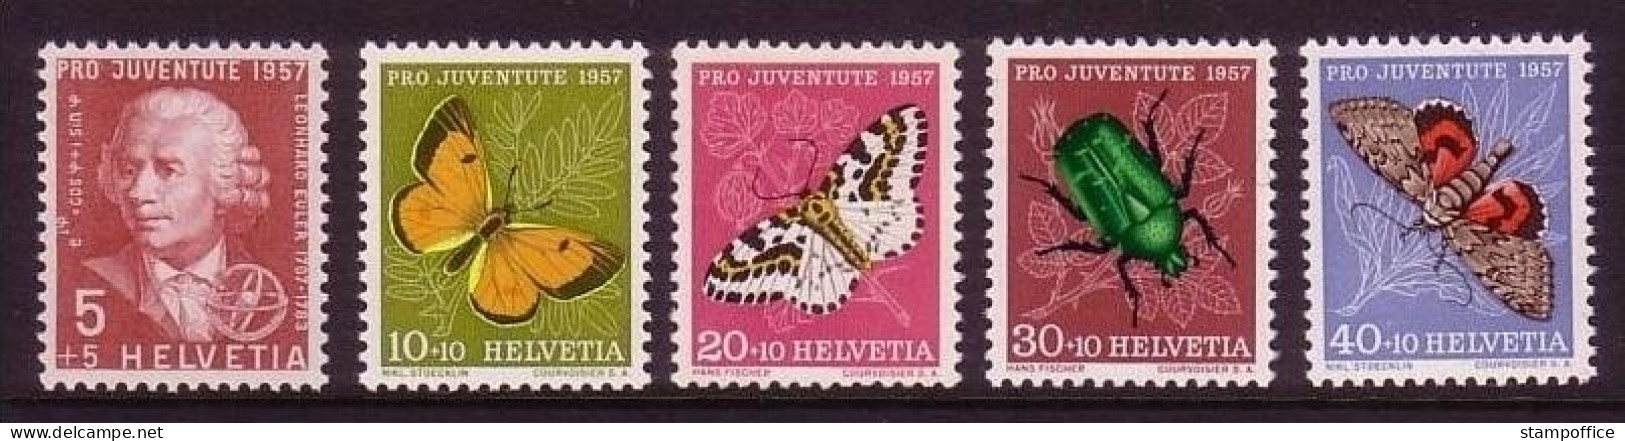 SCHWEIZ MI-NR. 648-652 POSTFRISCH(MINT) PRO JUVENTUTE 1957 INSEKTEN SCHMETTERLINGE EULER - Papillons